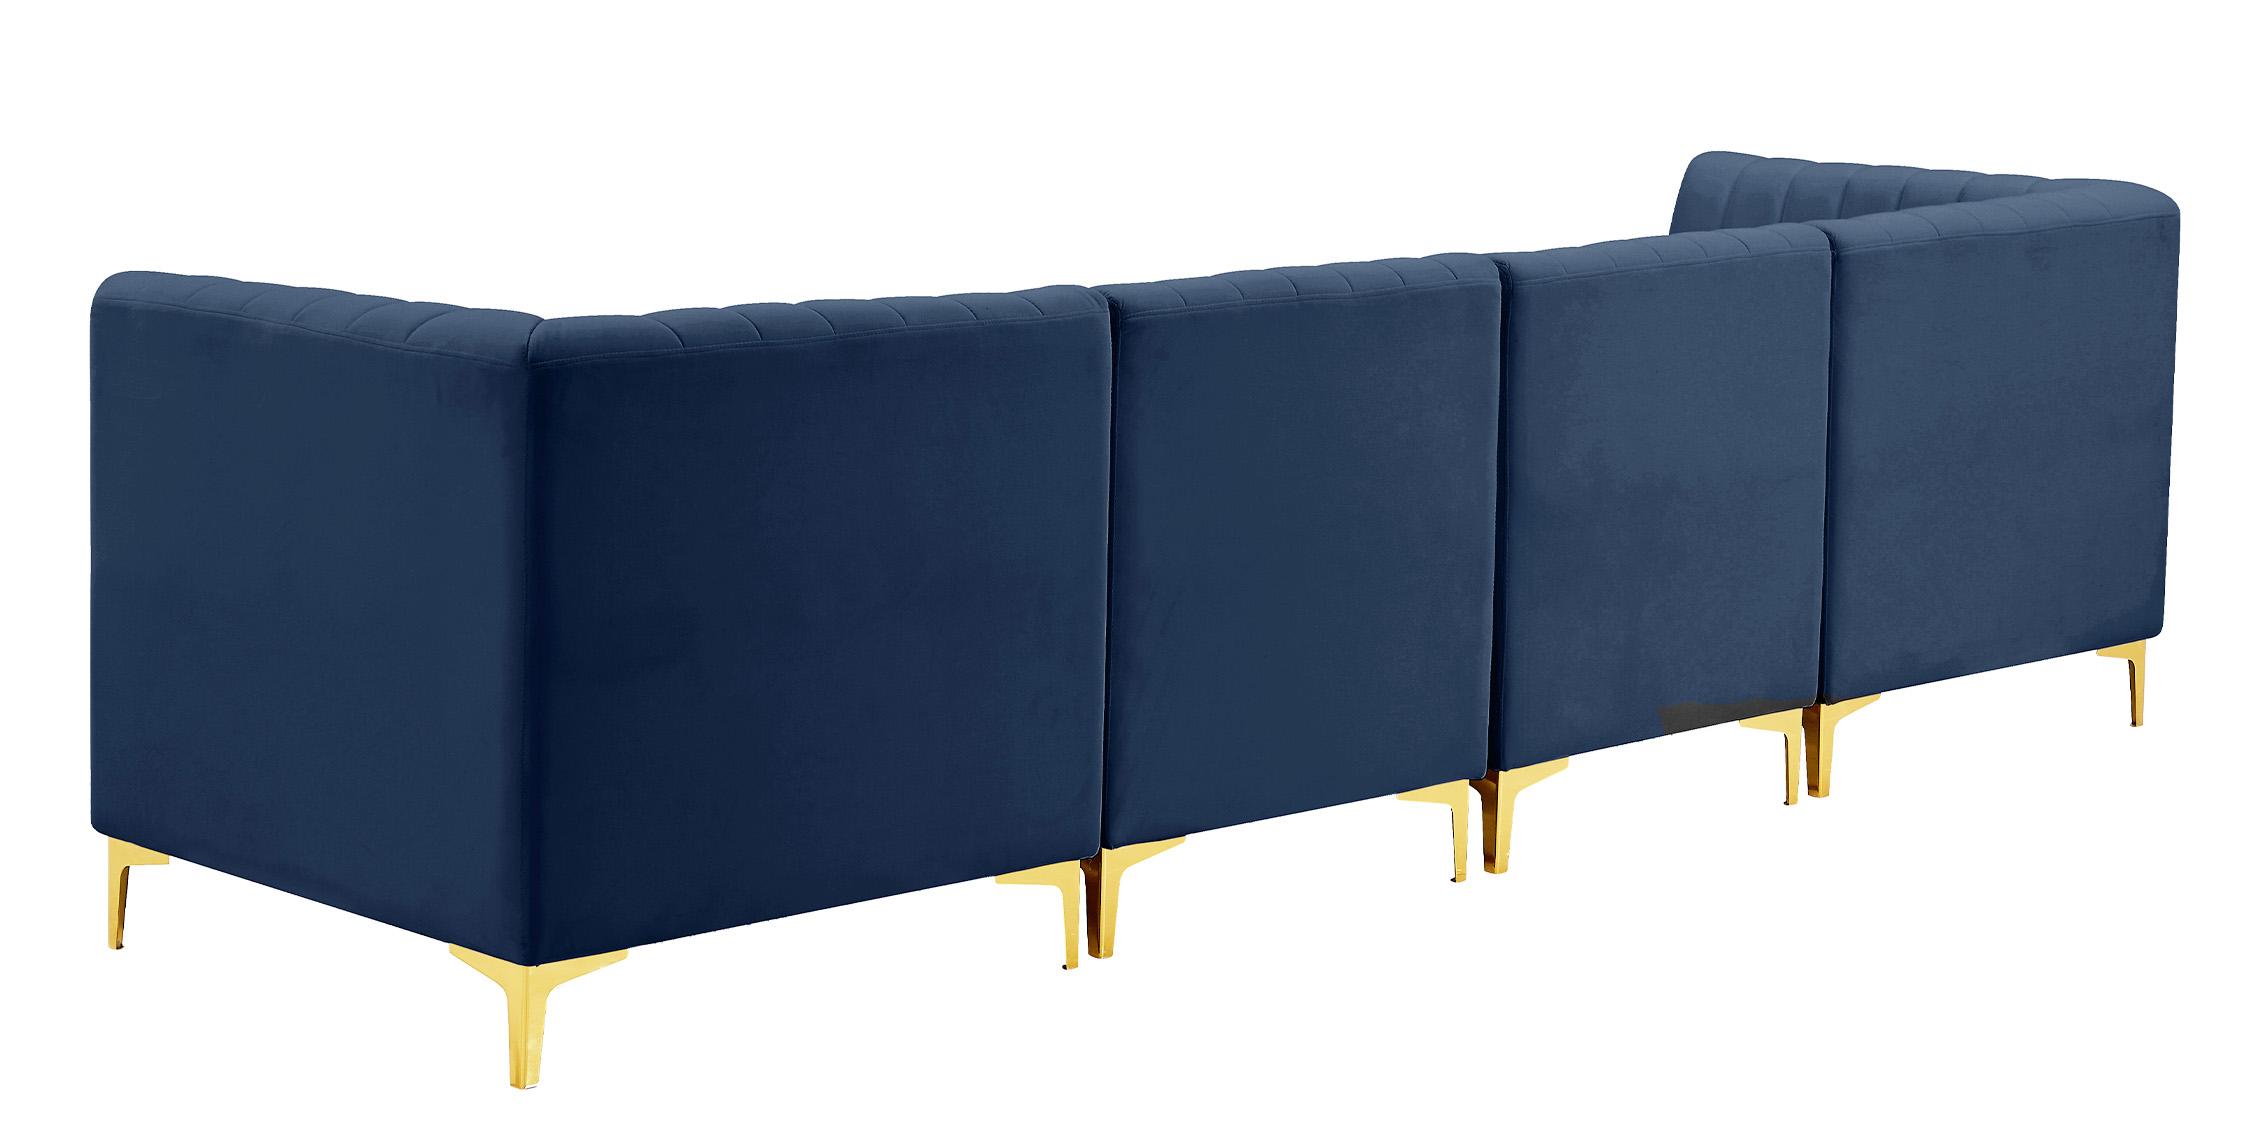 

    
604Navy-S119 Meridian Furniture Modular Sectional Sofa
